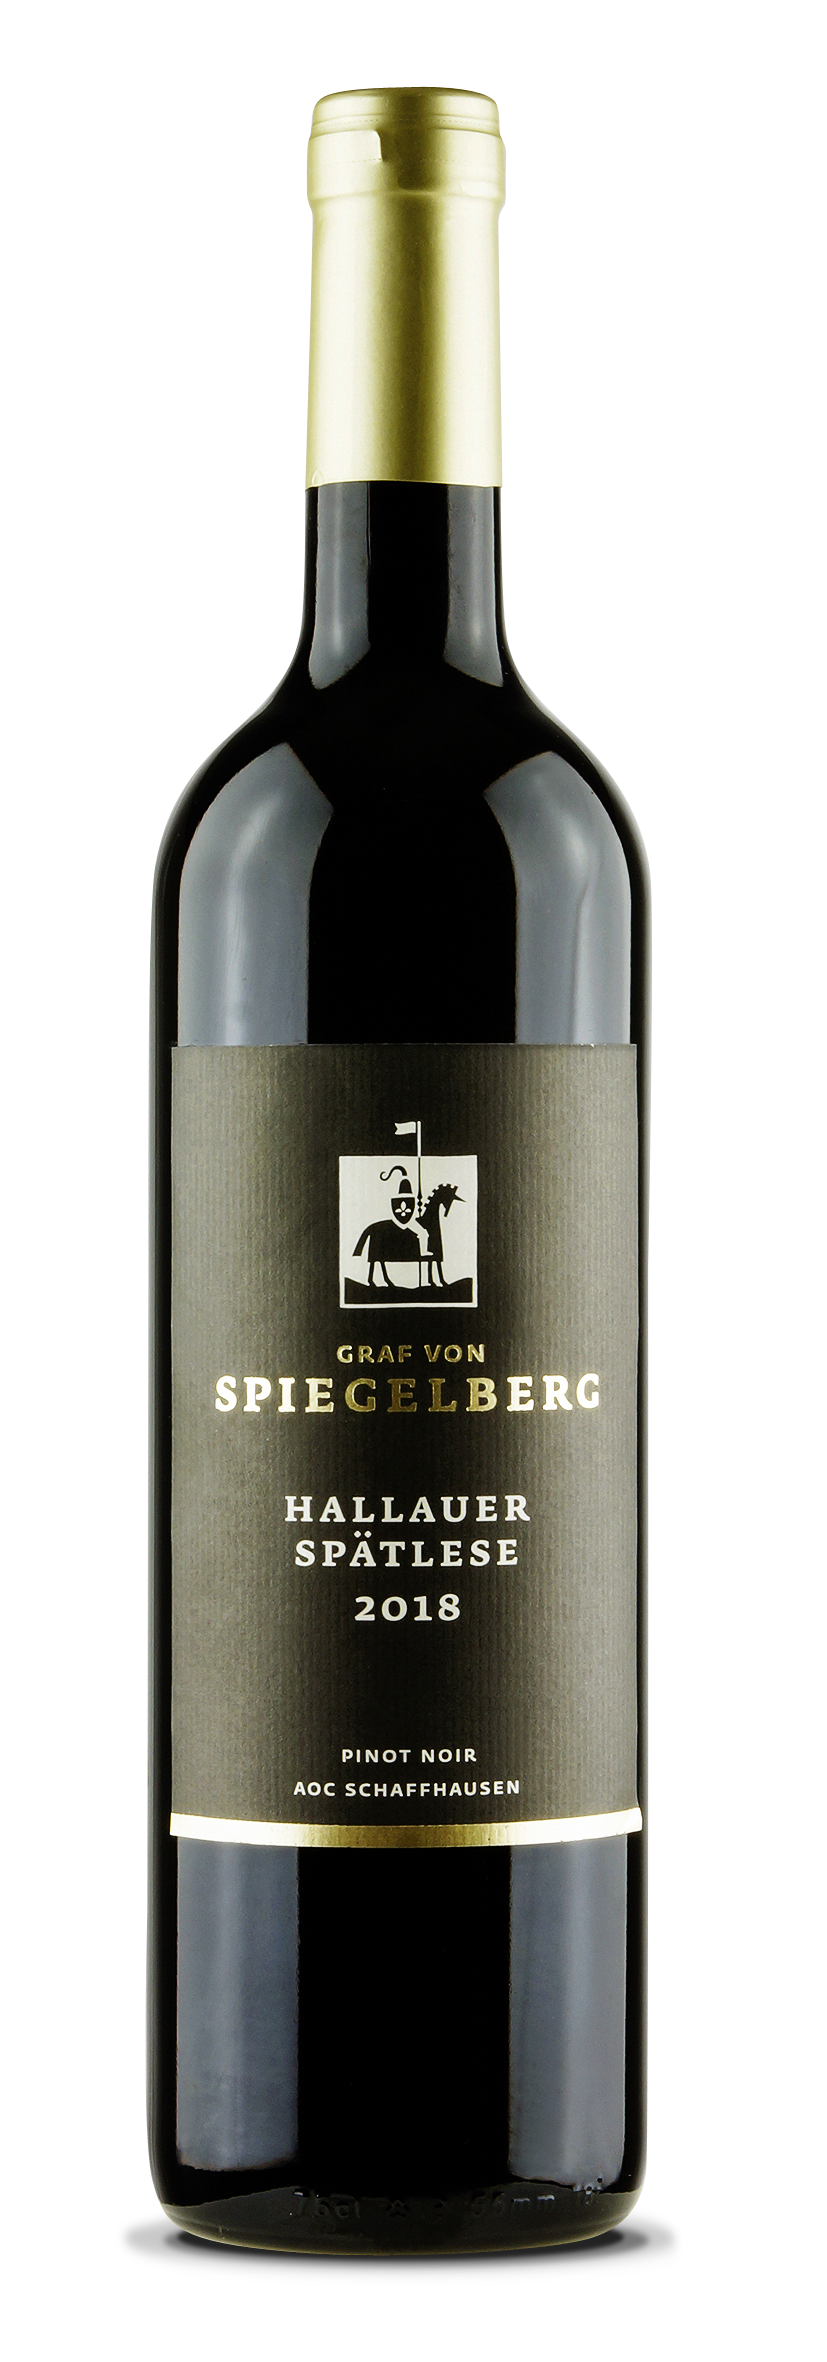 Schaffhausen AOC Hallauer Pinot Noir Spätlese Graf von Spiegelberg 2018